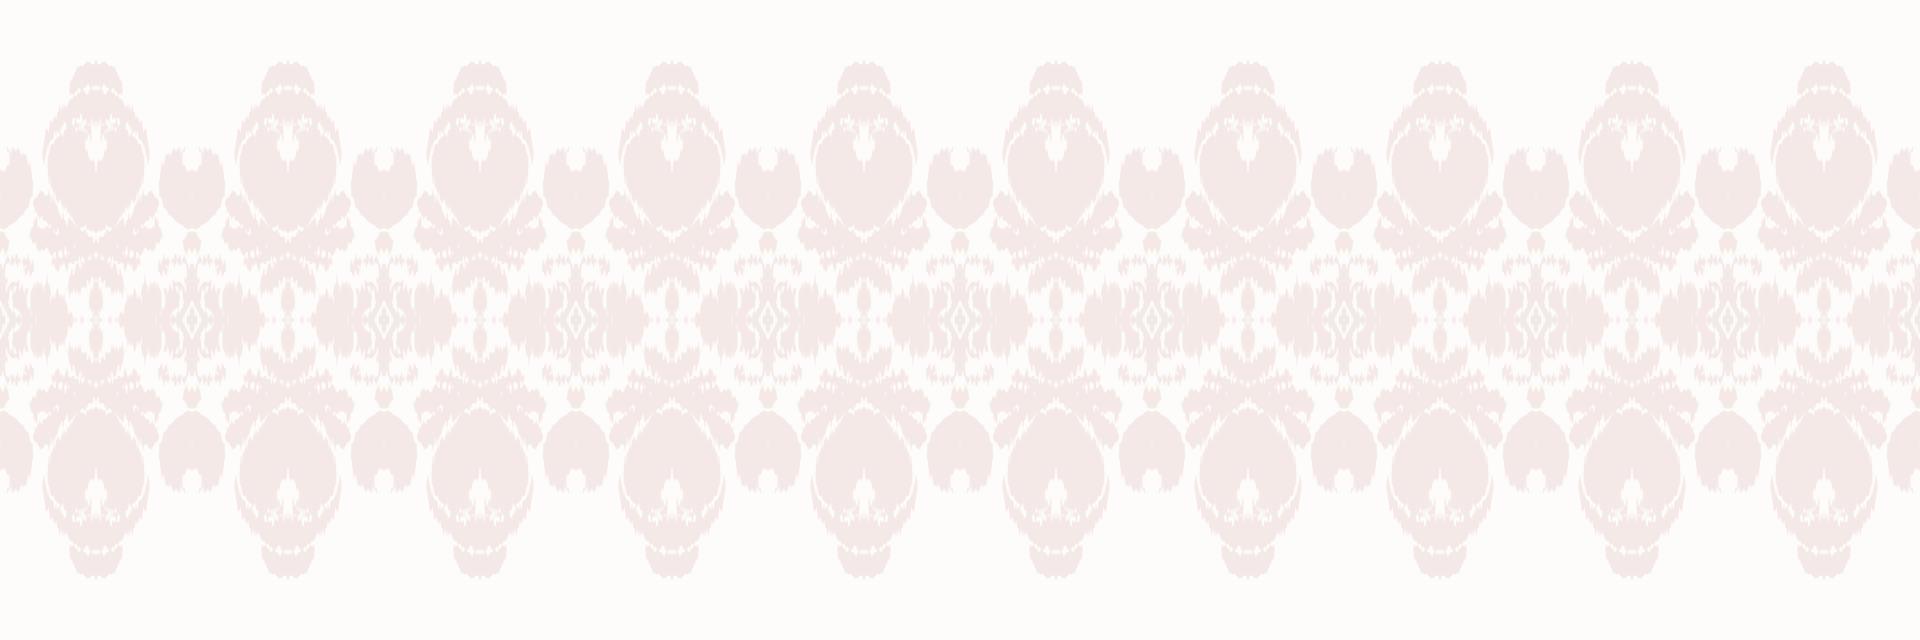 batik tessile motivo ikat tessuto senza soluzione di continuità modello digitale vettore design per Stampa saree Kurti Borneo tessuto confine spazzola simboli campioni progettista